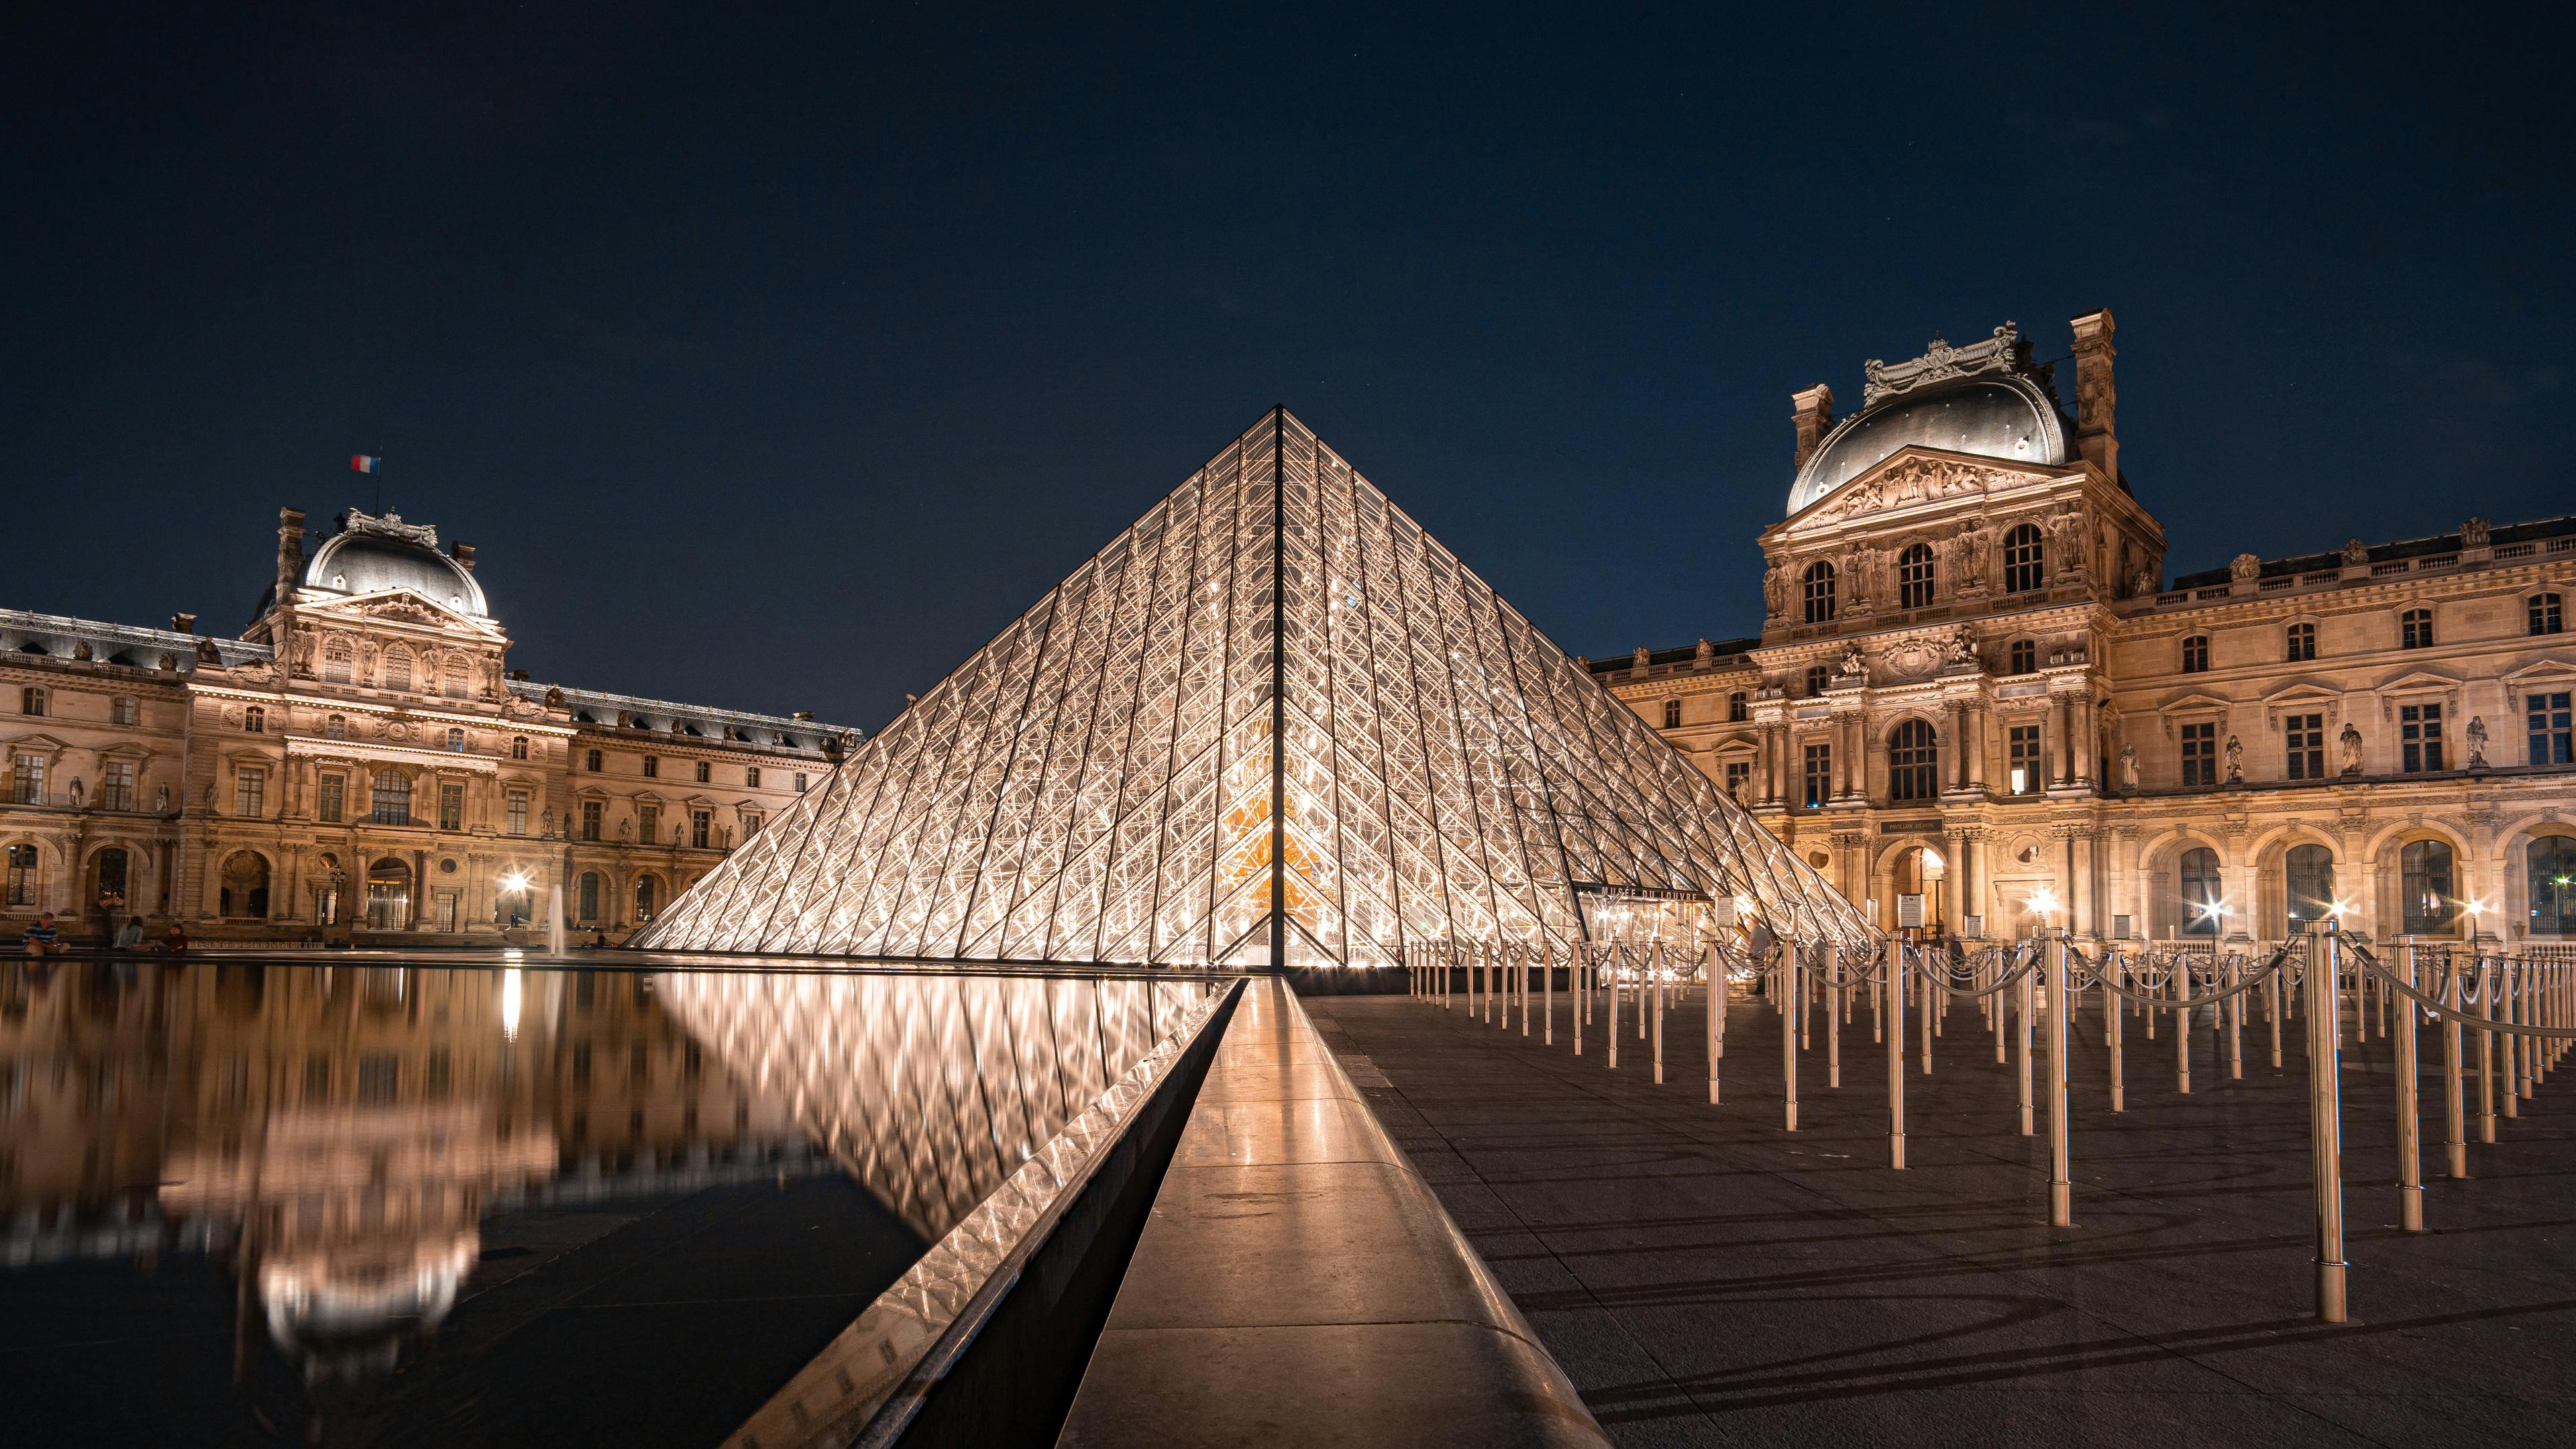 Louvre et Pyramide du Louvre de nuit et éclairés